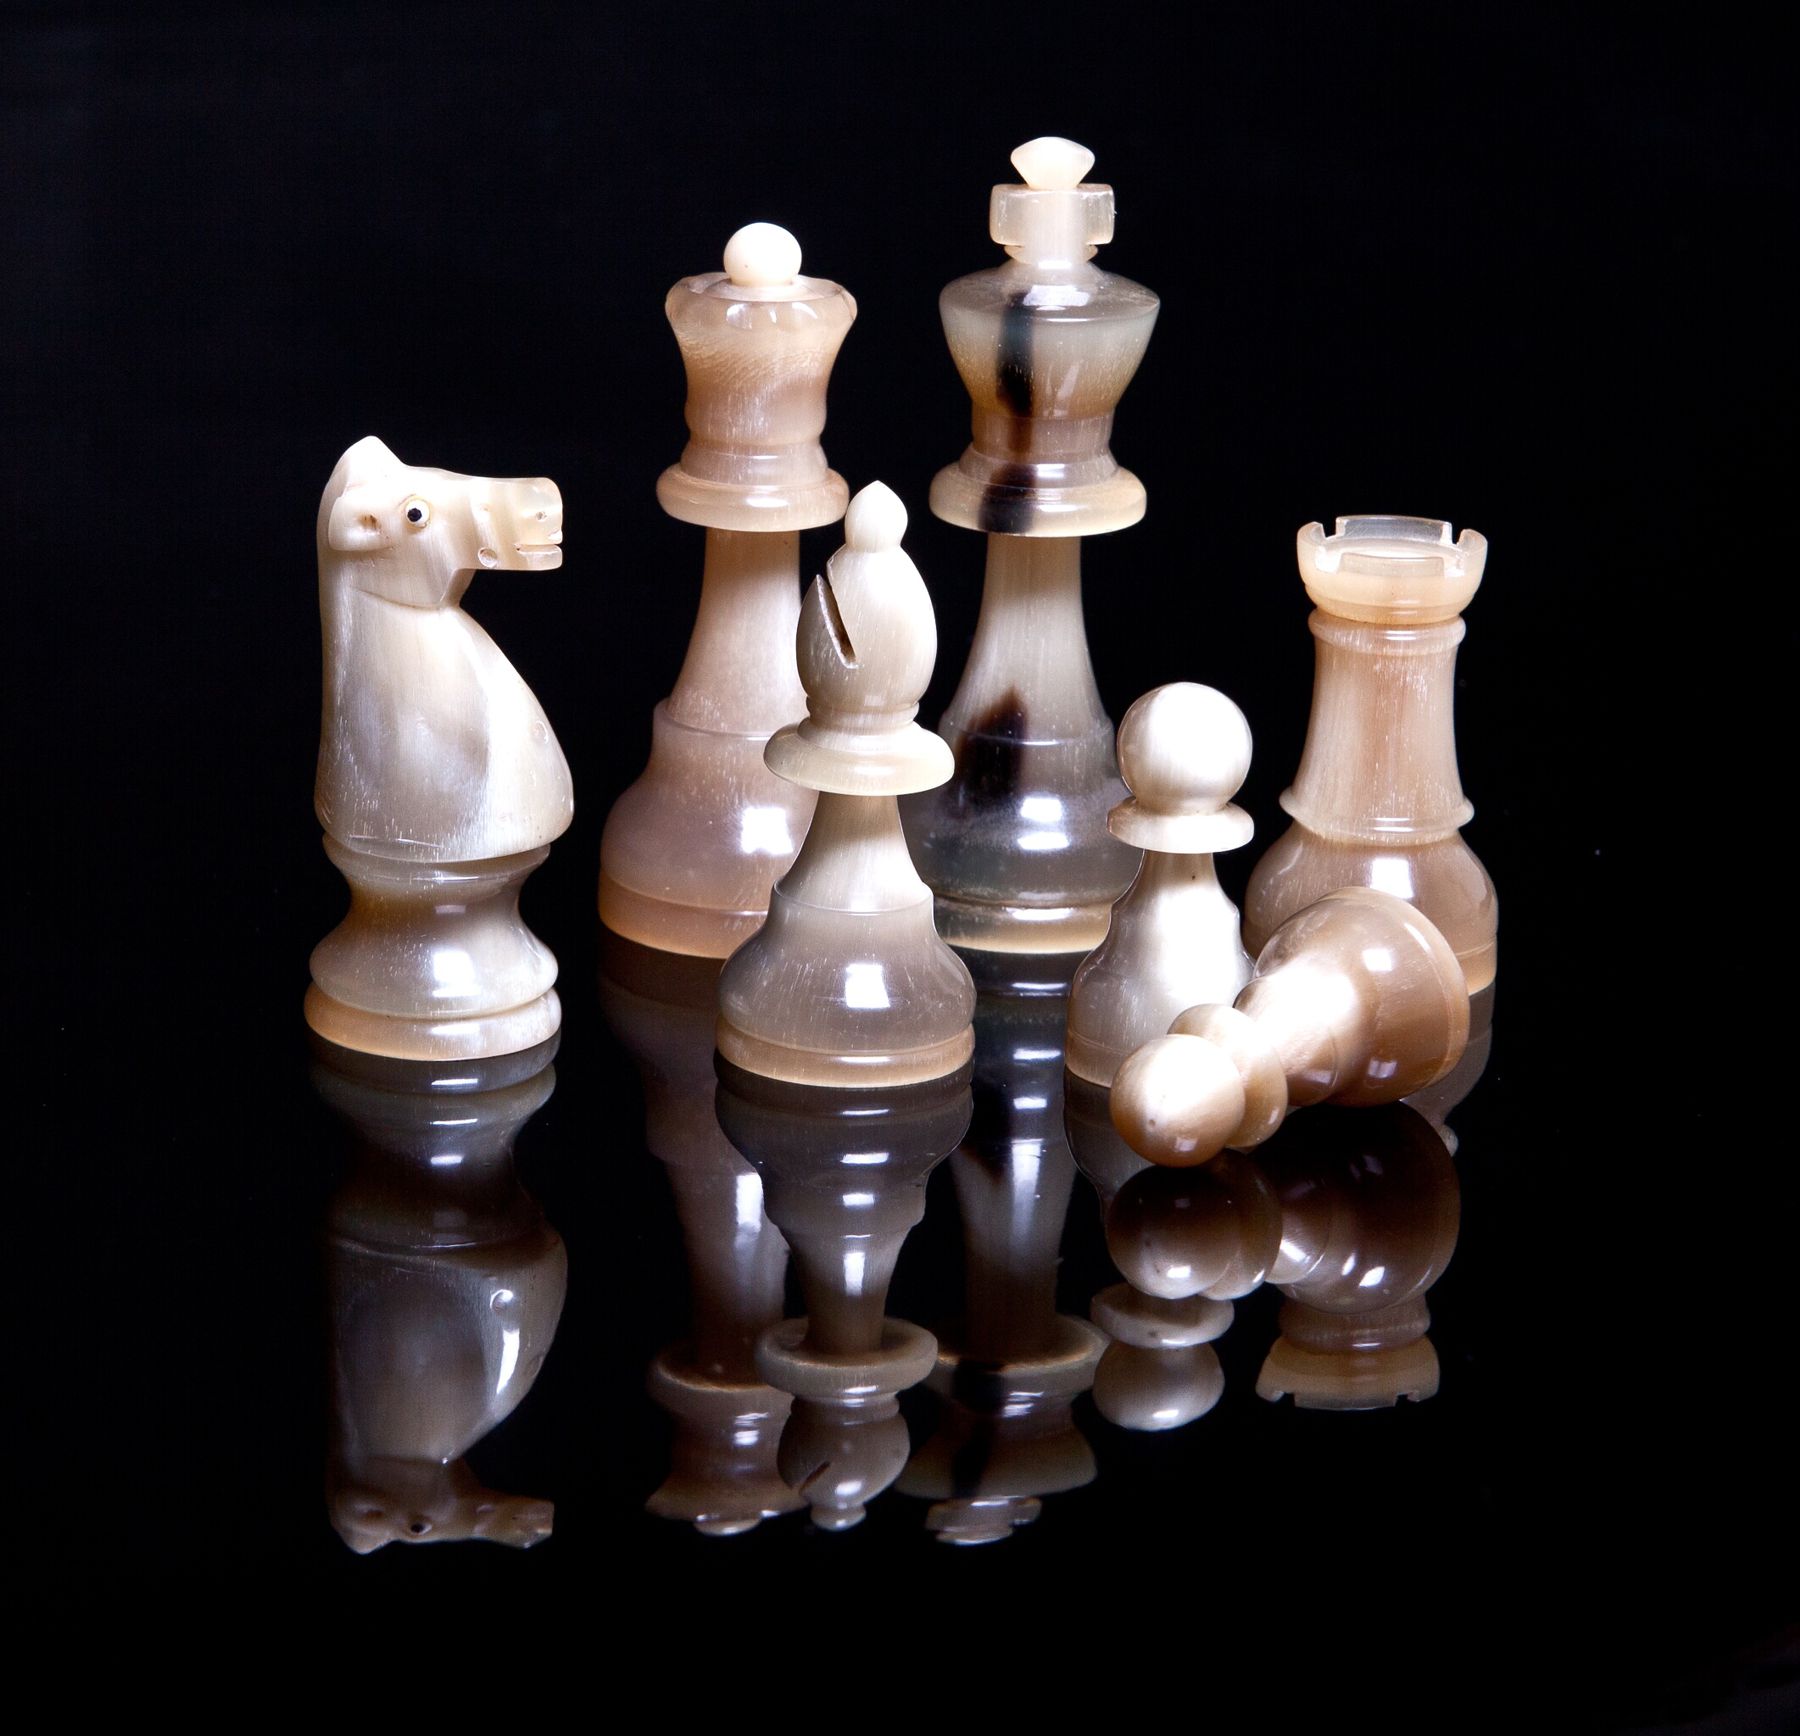 Schachspiel mit Schublade und Figuren aus Horn - 1017 - 4 - 1 - 2